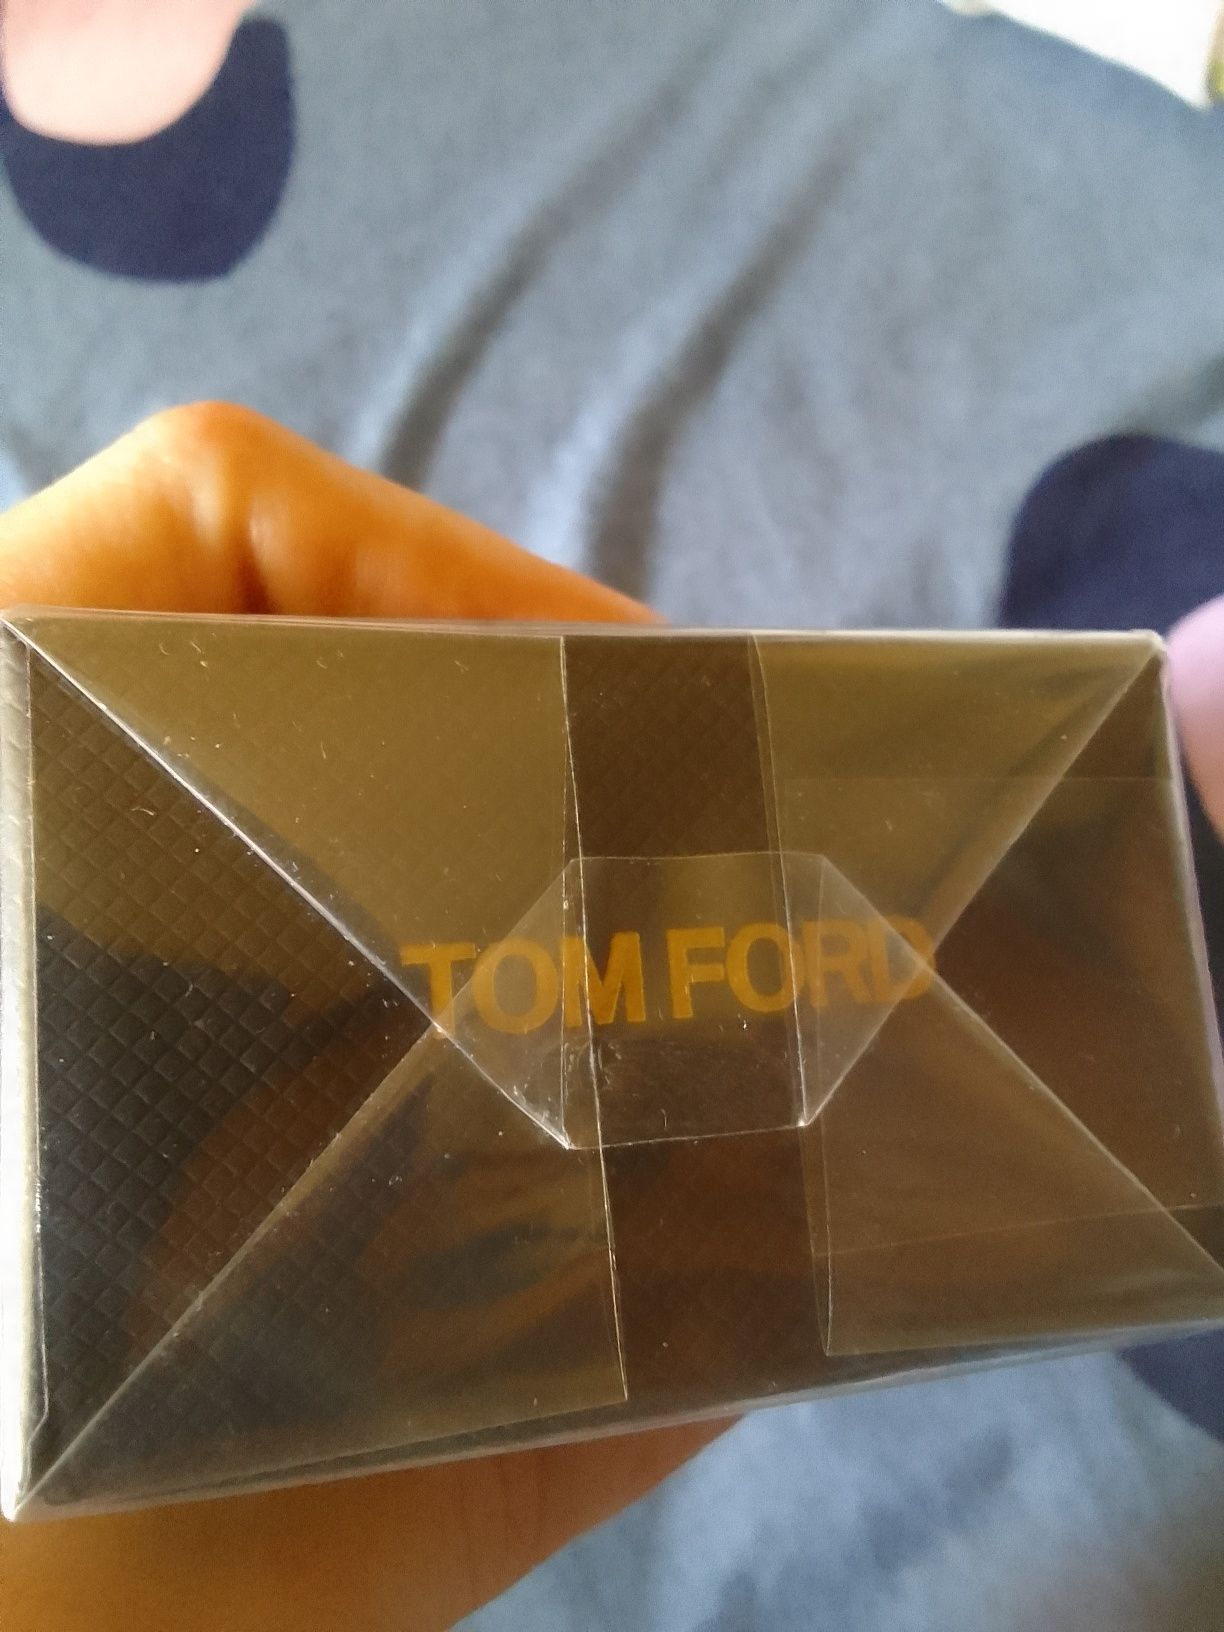 Tom Ford Vanille Fatalle parfum